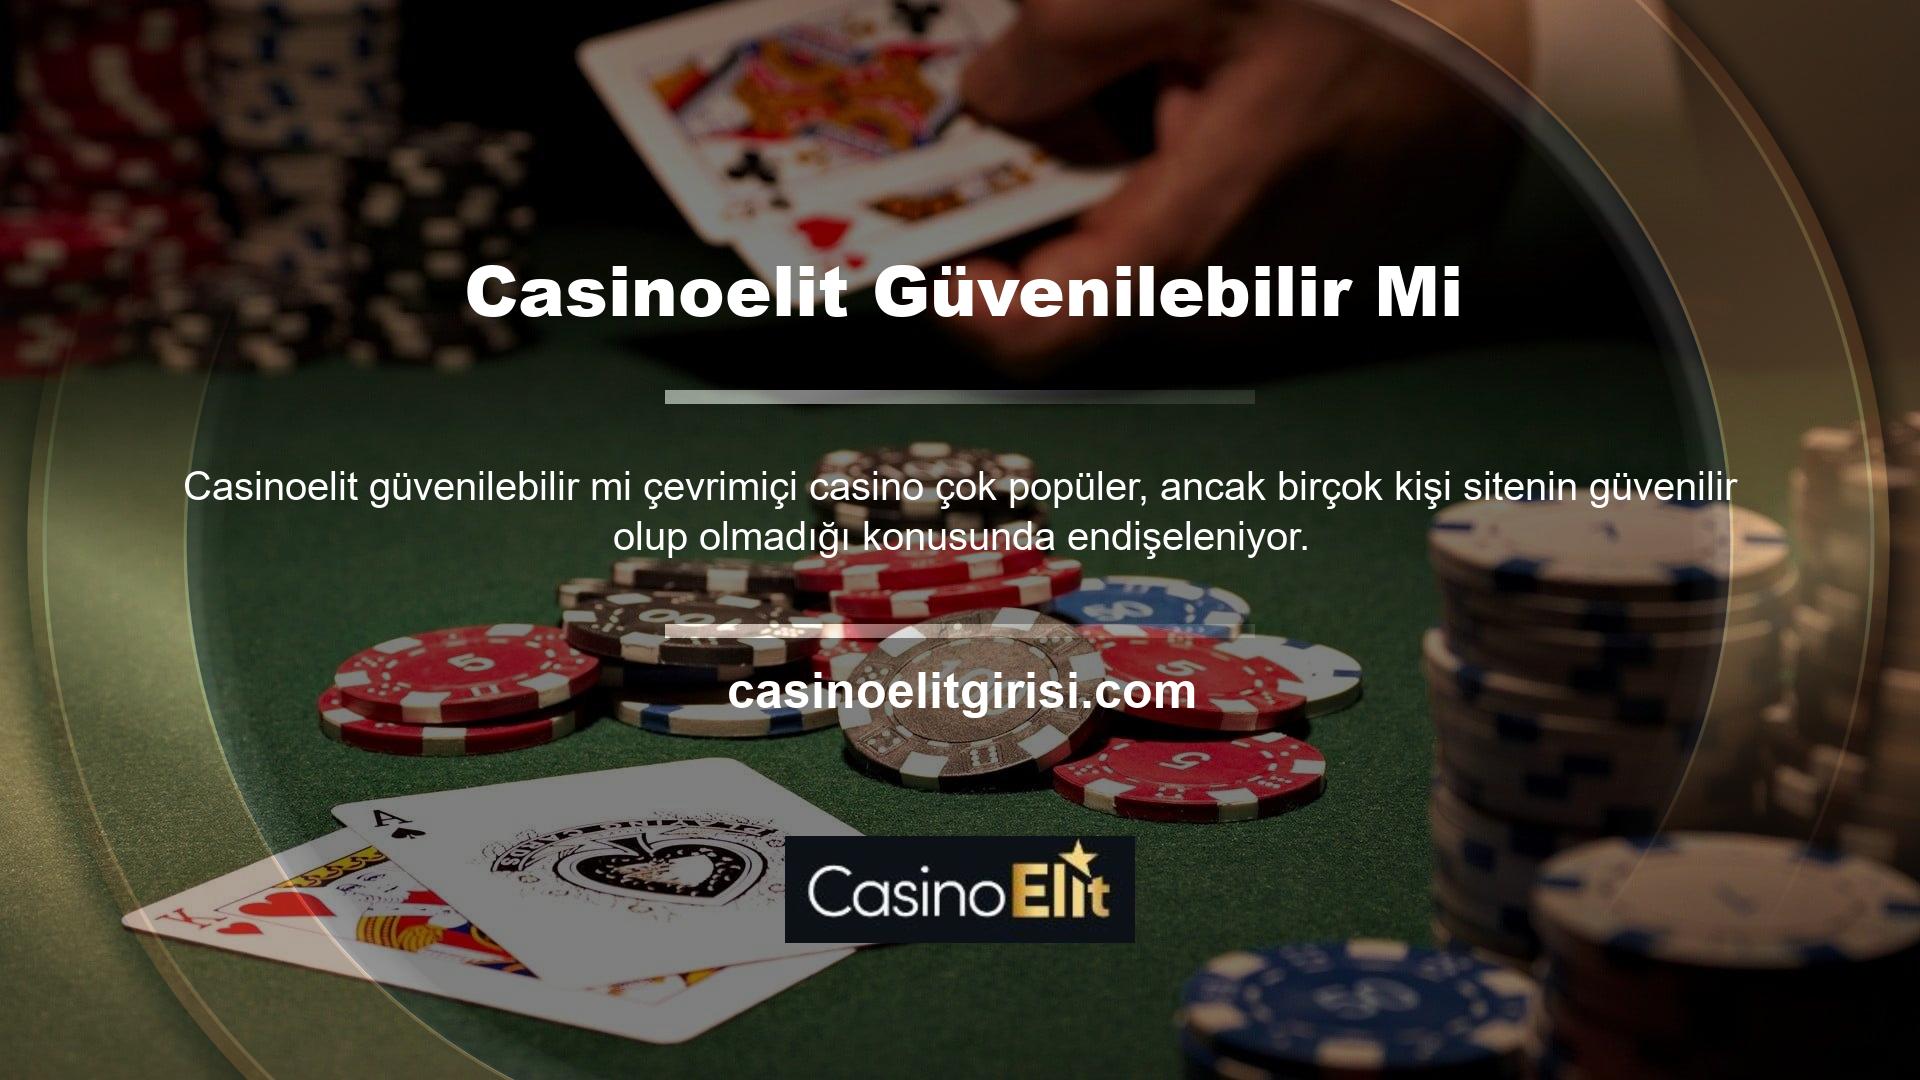 Ancak Casinoelit gibi güvenilir bahis siteleri sayesinde kullanıcılara güvenli bir deneyim sağlanmaktadır